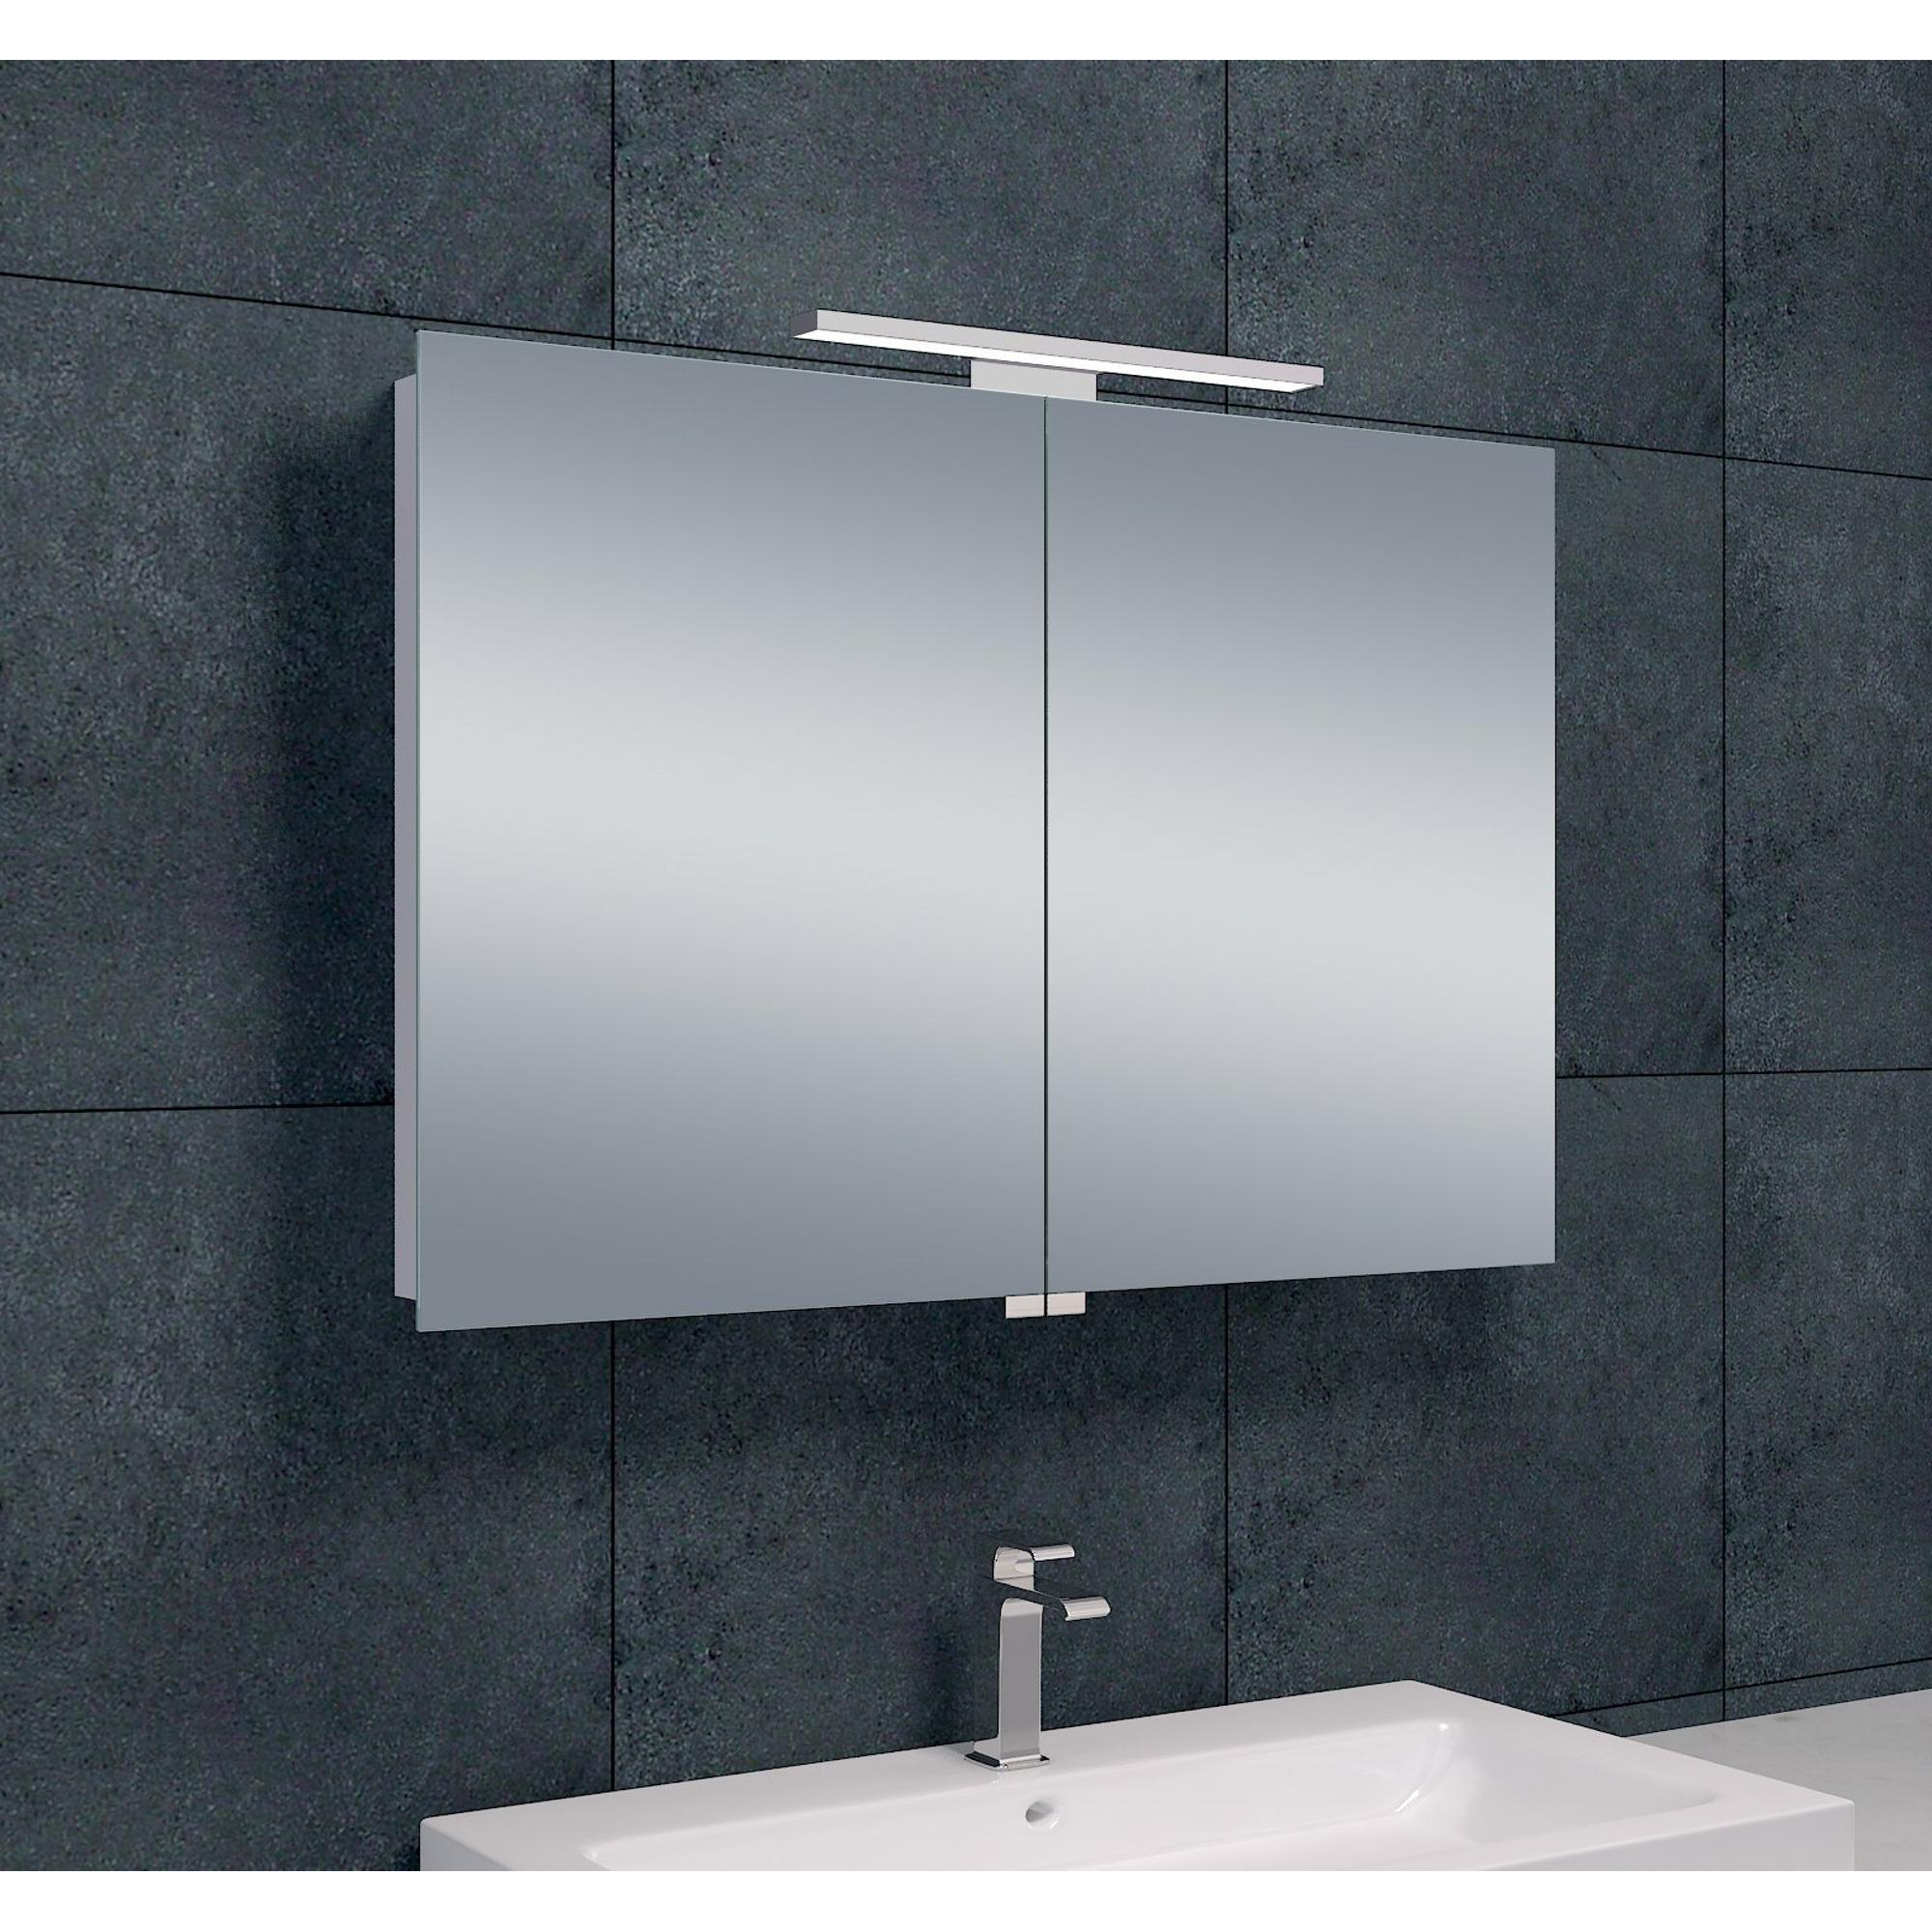 Meuble miroir salle de bain avec éclairage